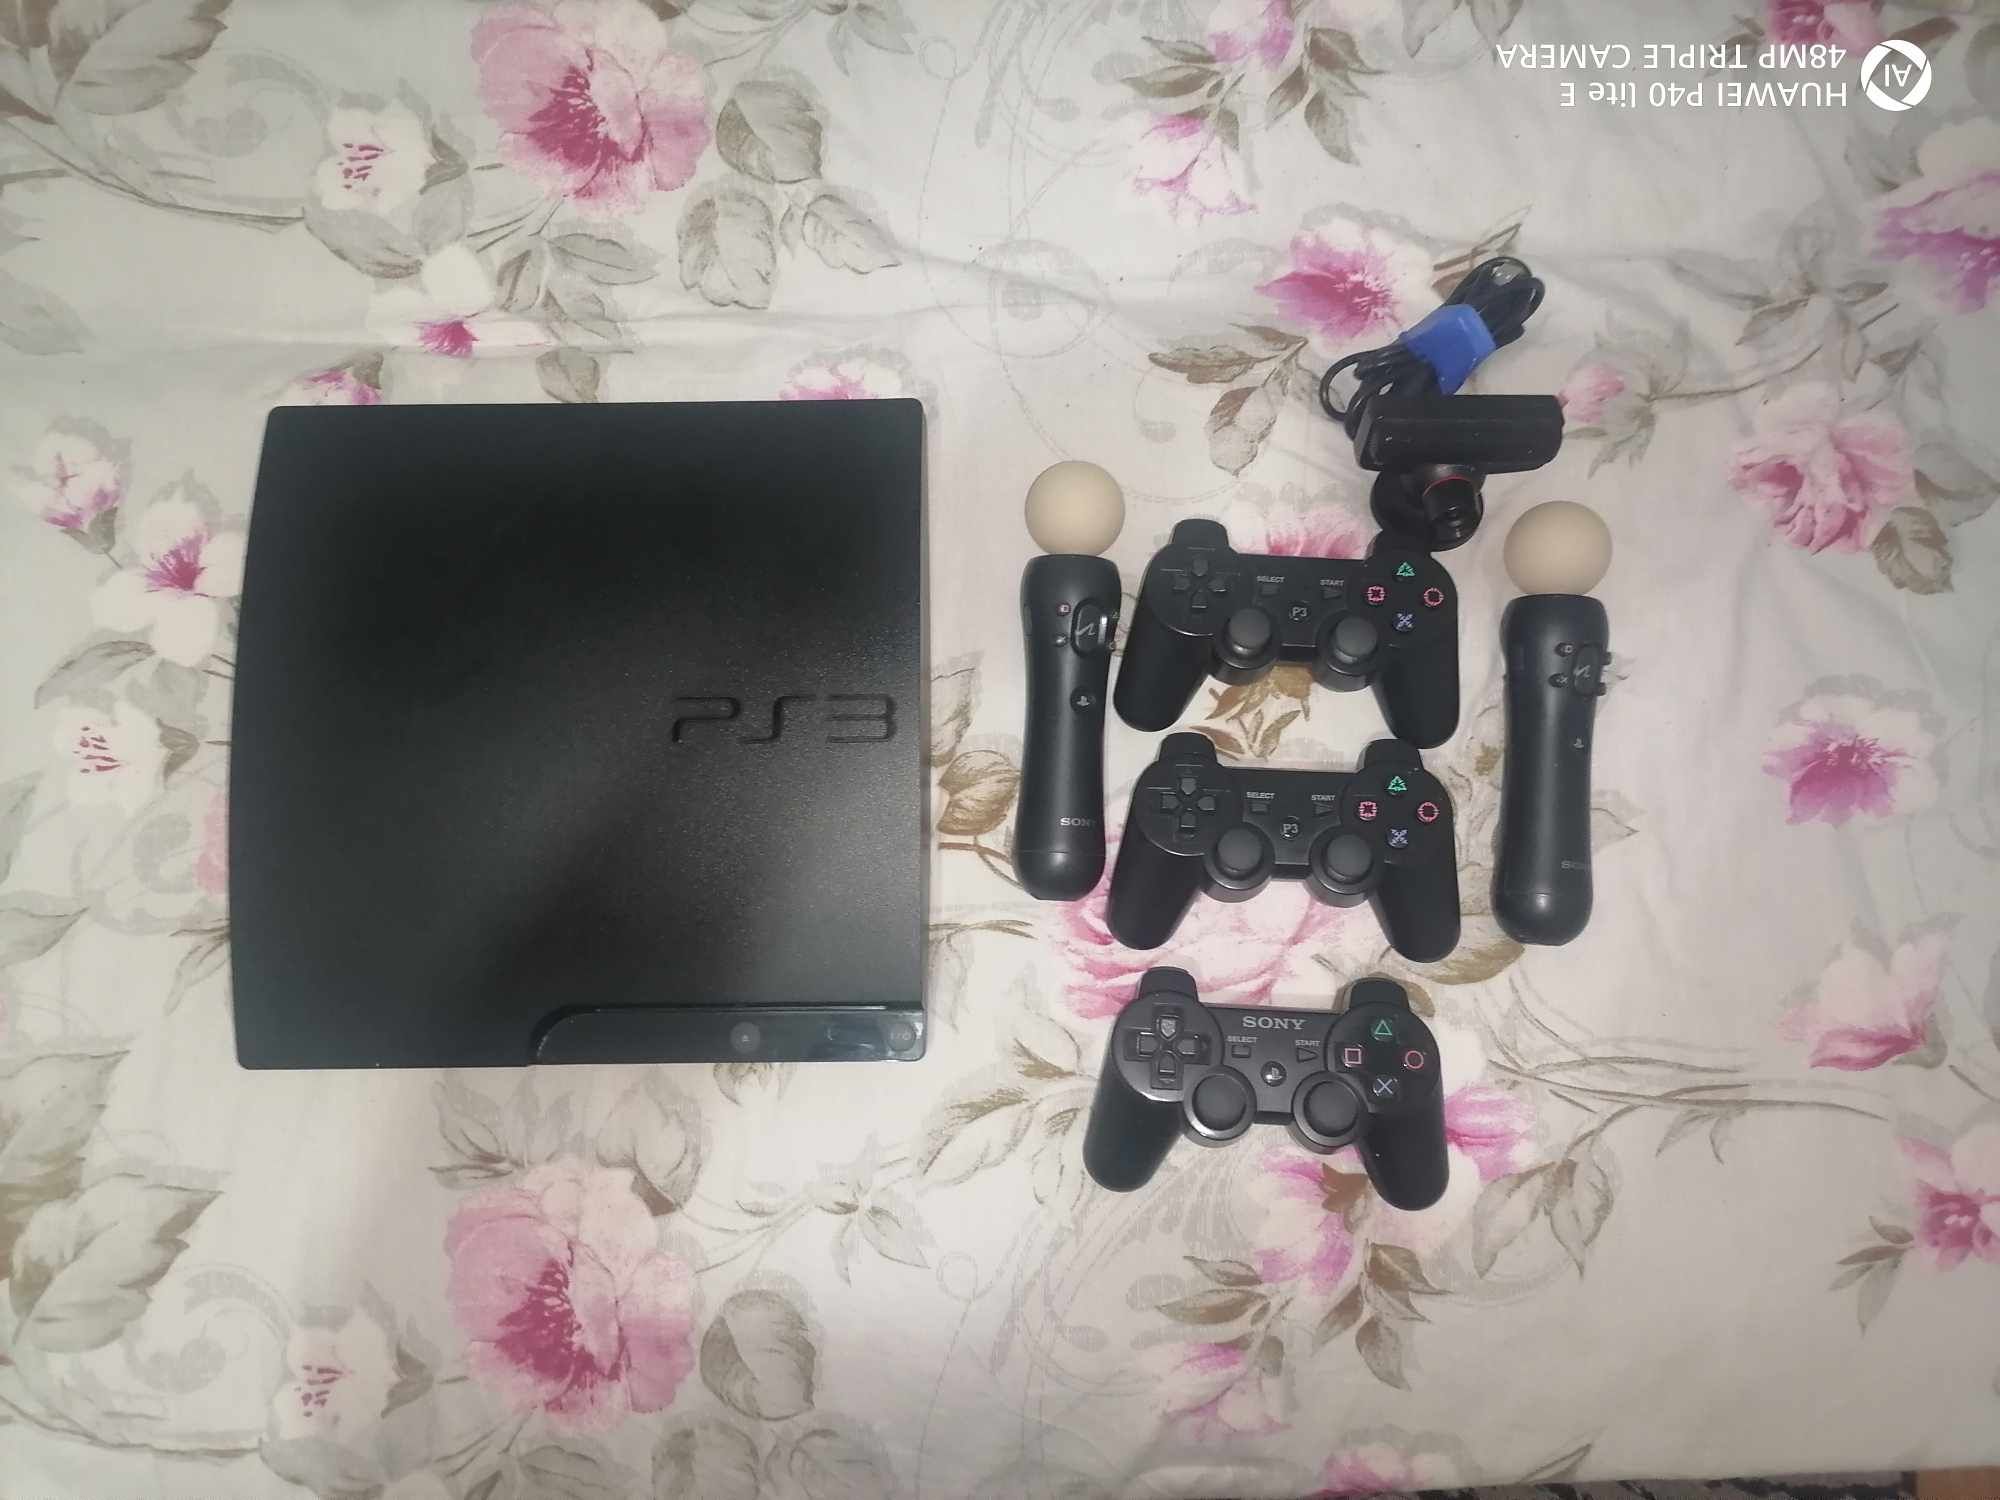 Vand PlayStation 3 cu set motion controller